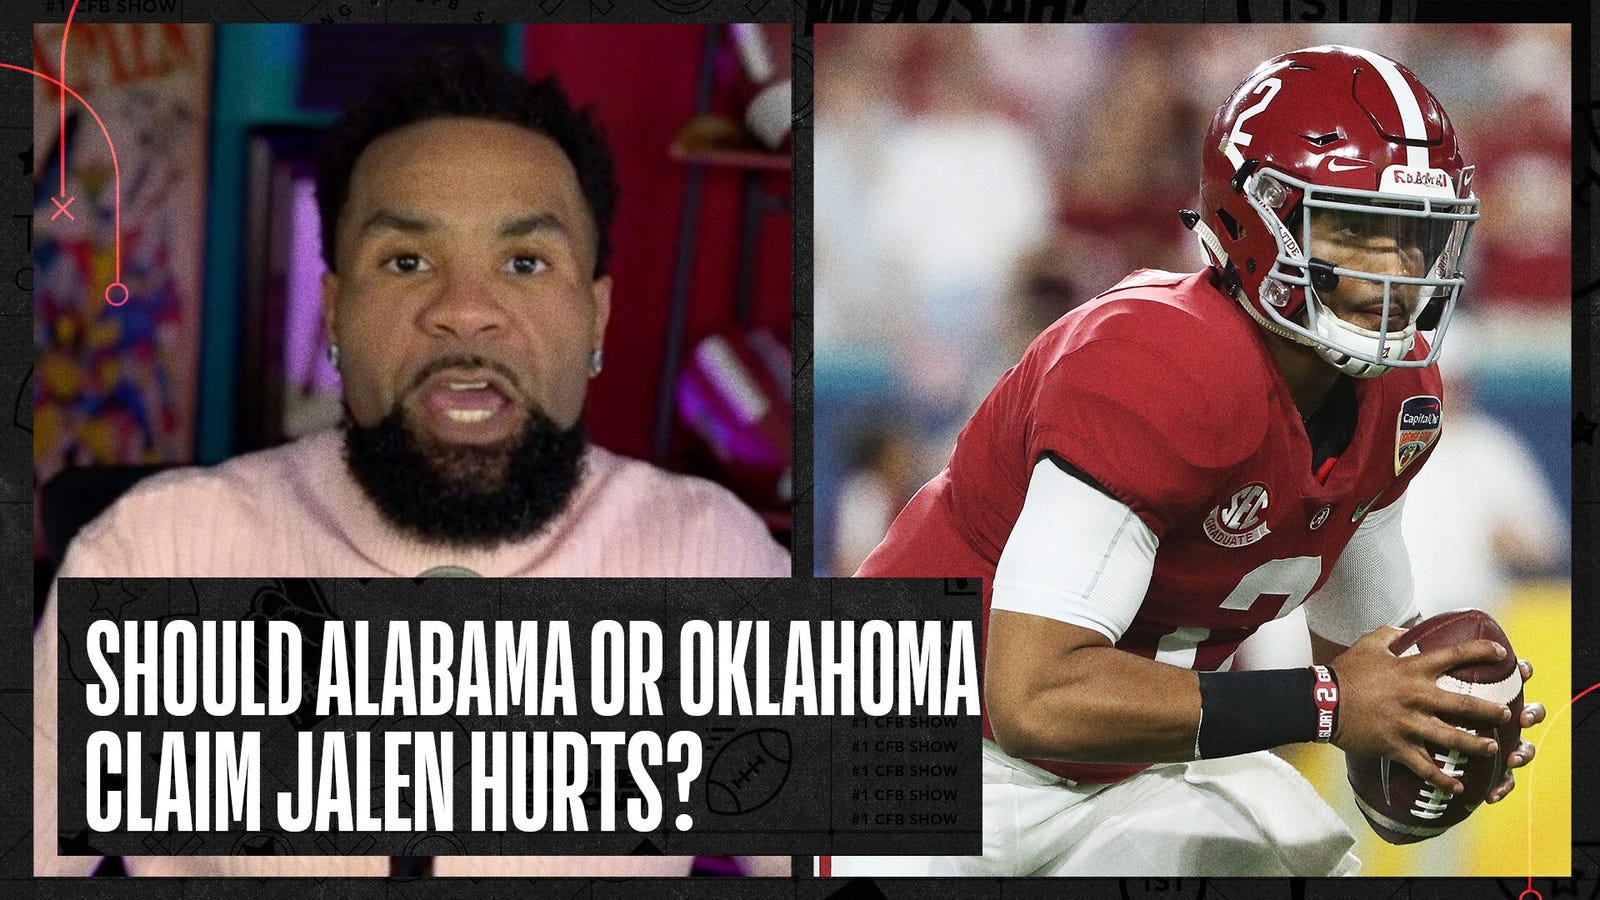 Alabama or Oklahoma: Who Gets to Claim Jalen Hurts?